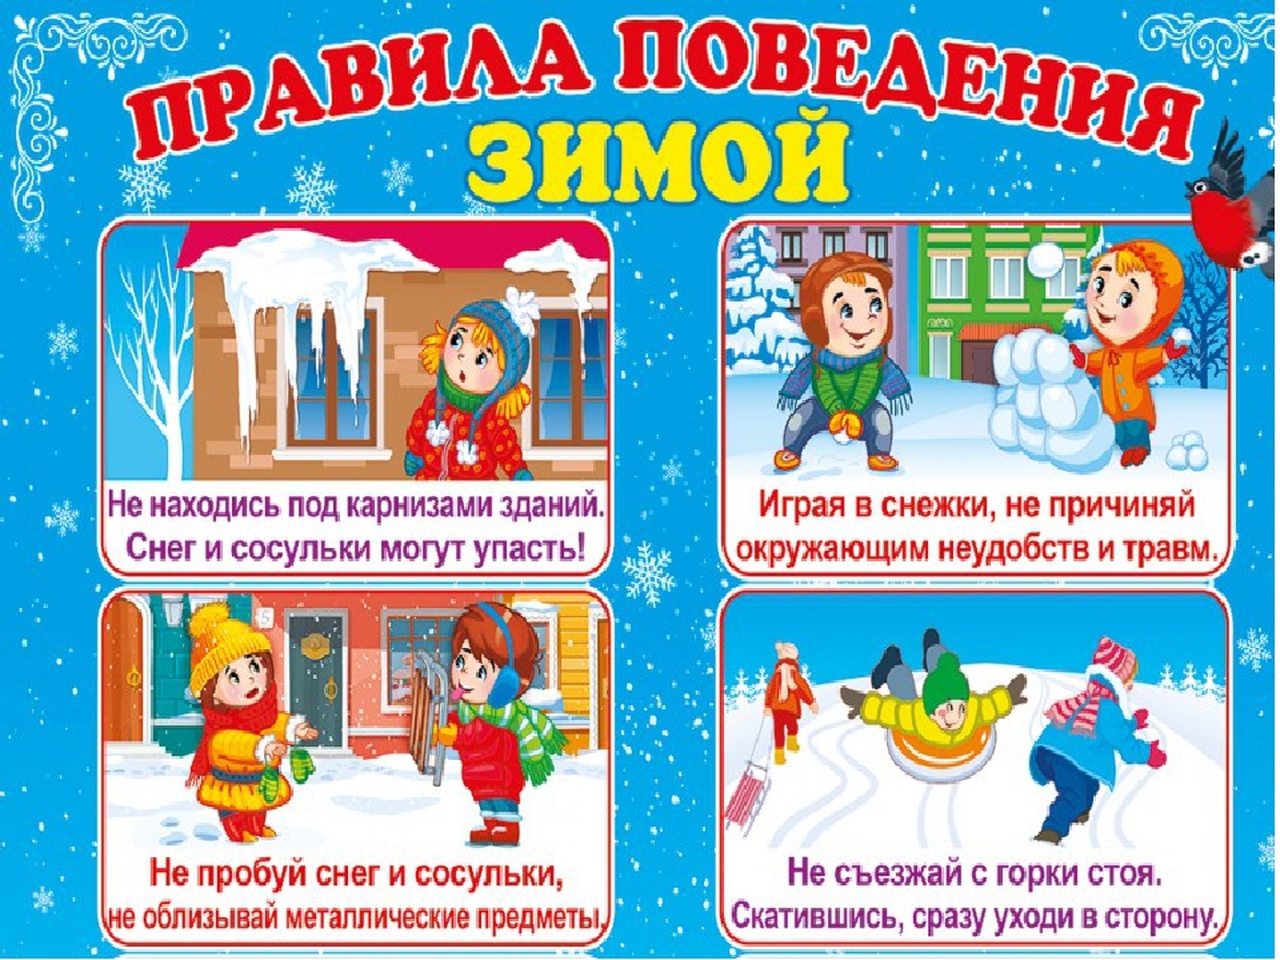 Правила безопасности зимой для детей